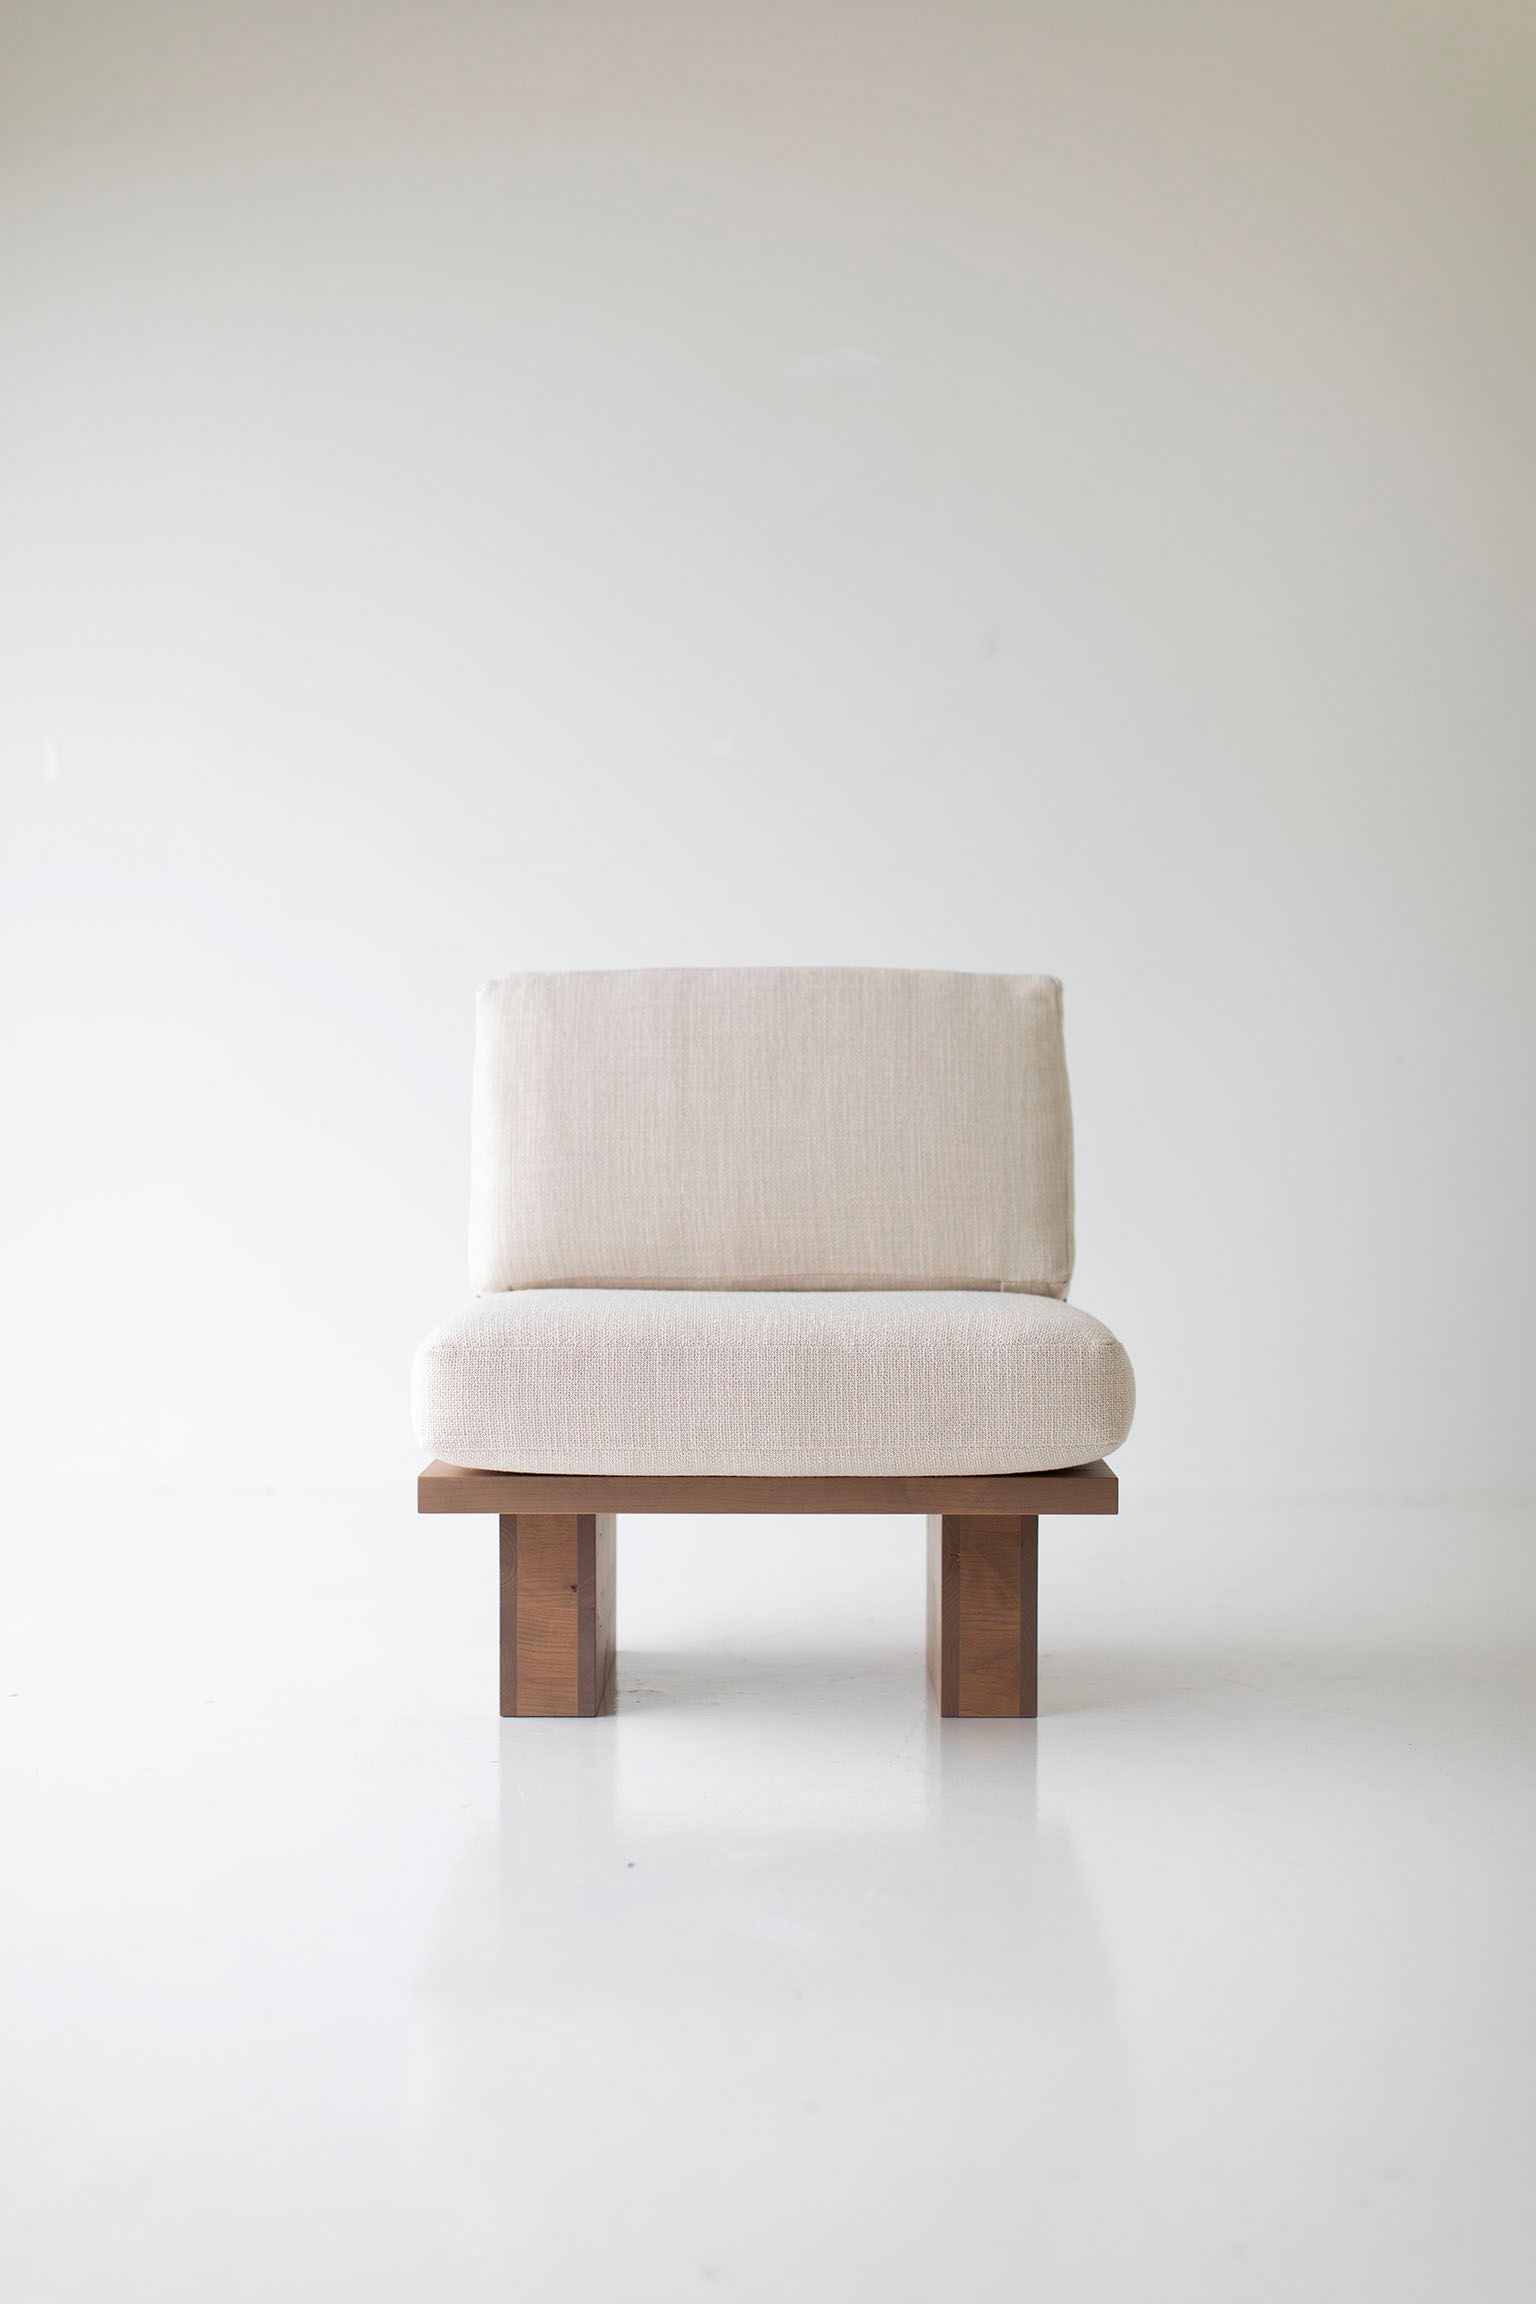 Suelo Modern Side Chair - 0420